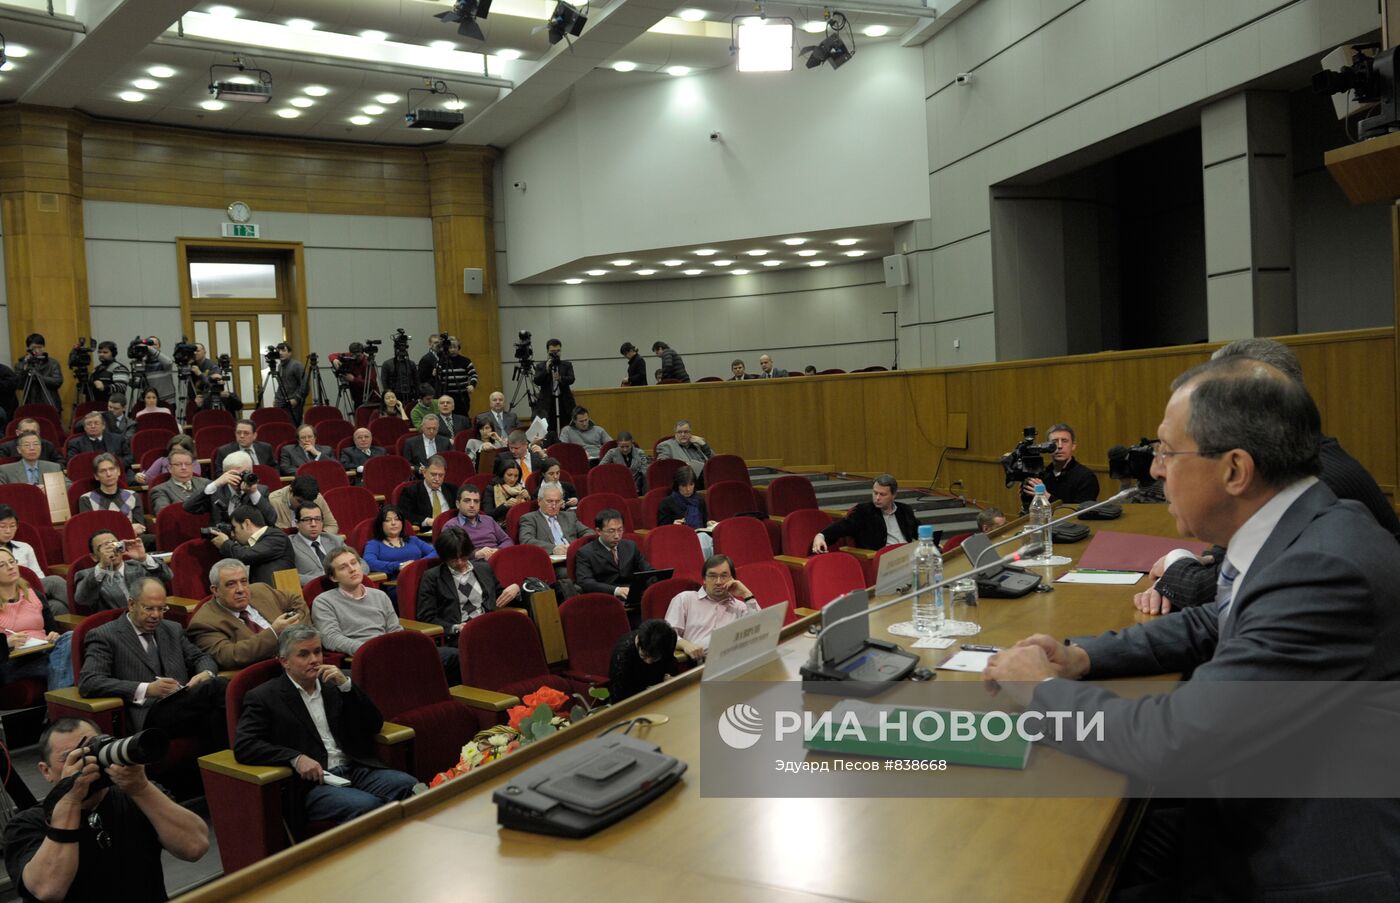 Пресс-конференция главы МИД РФ Сергея Лаврова